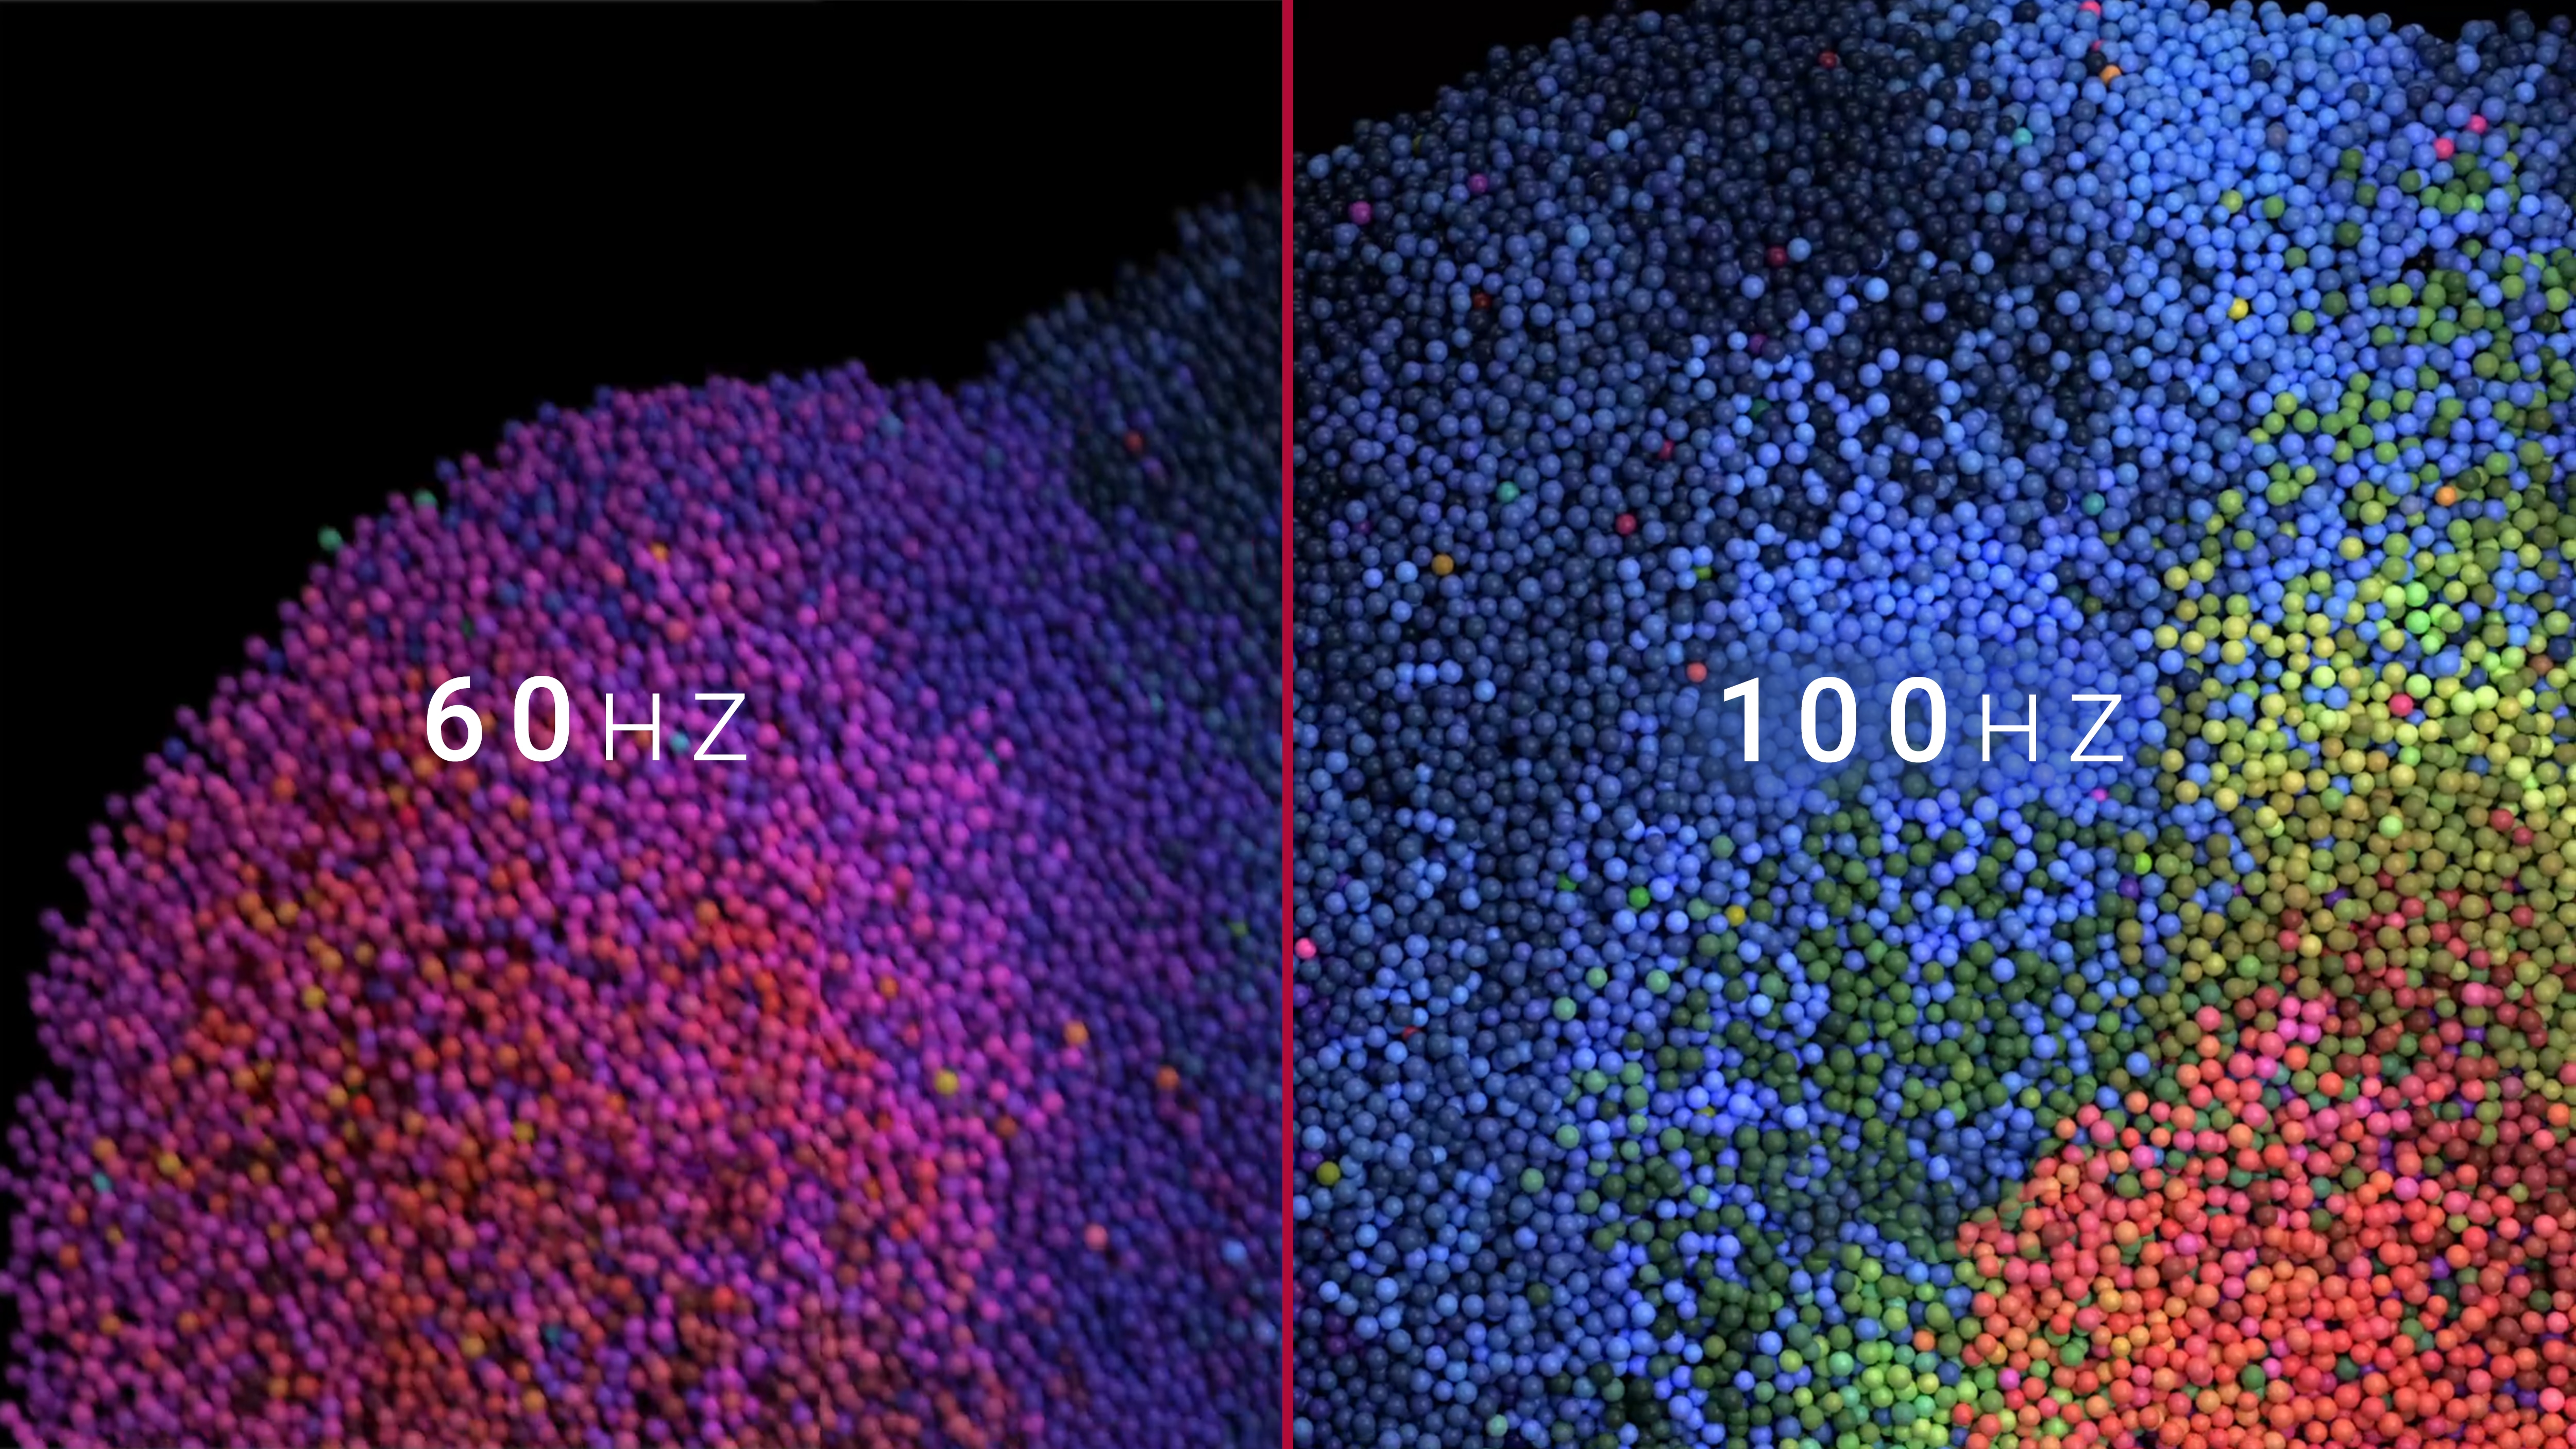 Sammenligning mellem 60 Hz-skærm og 100 Hz-skærm.